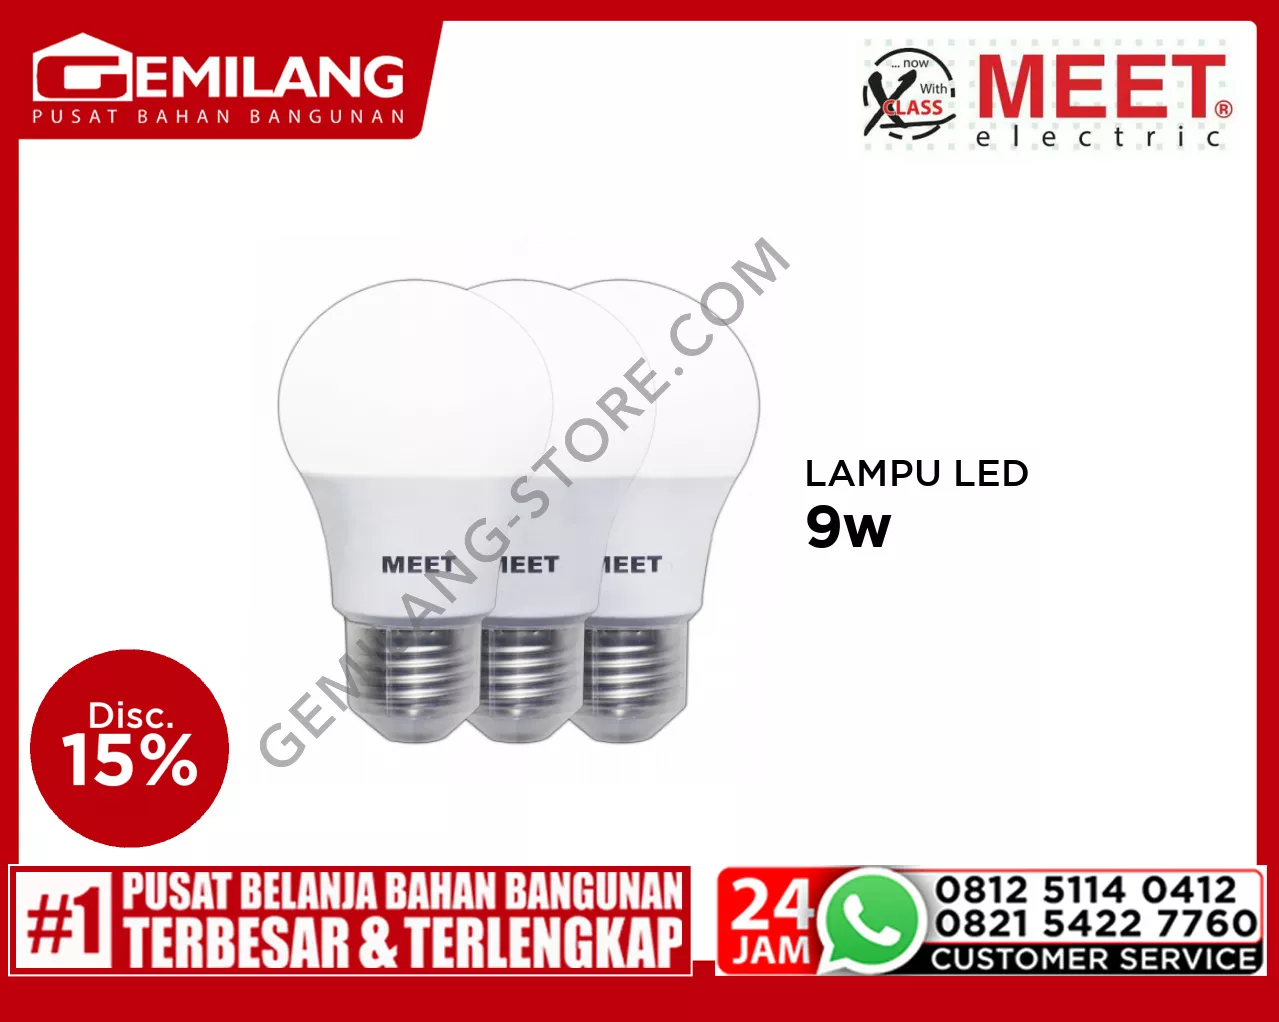 MEET LAMPU LED CLASSIC (2+1) 9w